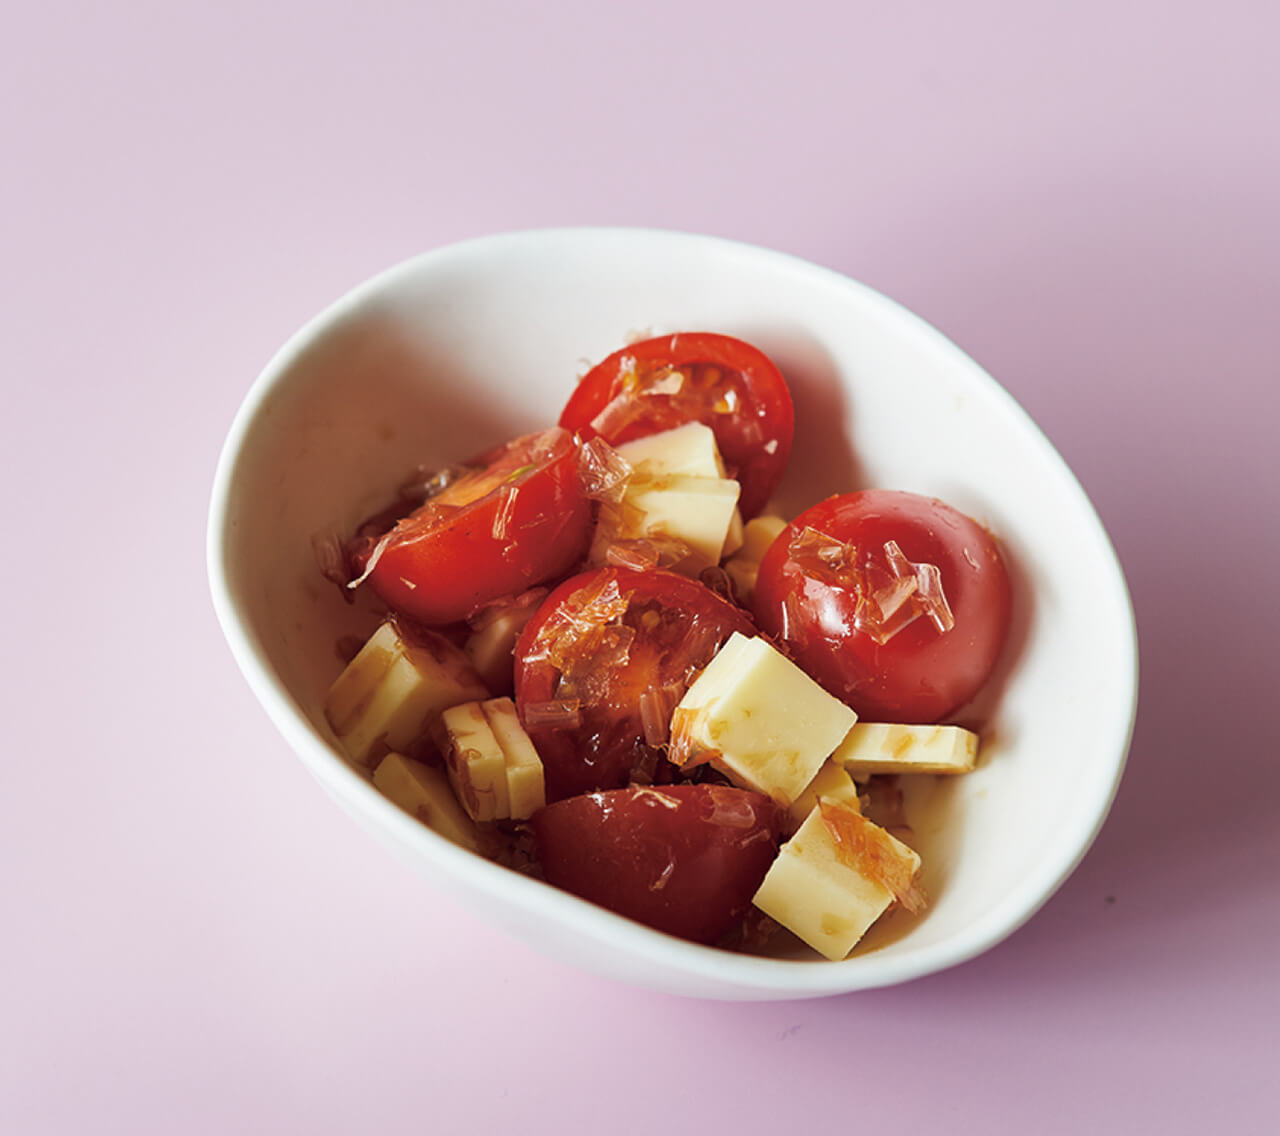 切って混ぜるだけの簡単メニュー「トマトチーズおかか」レシピ／ワタナベマキさん